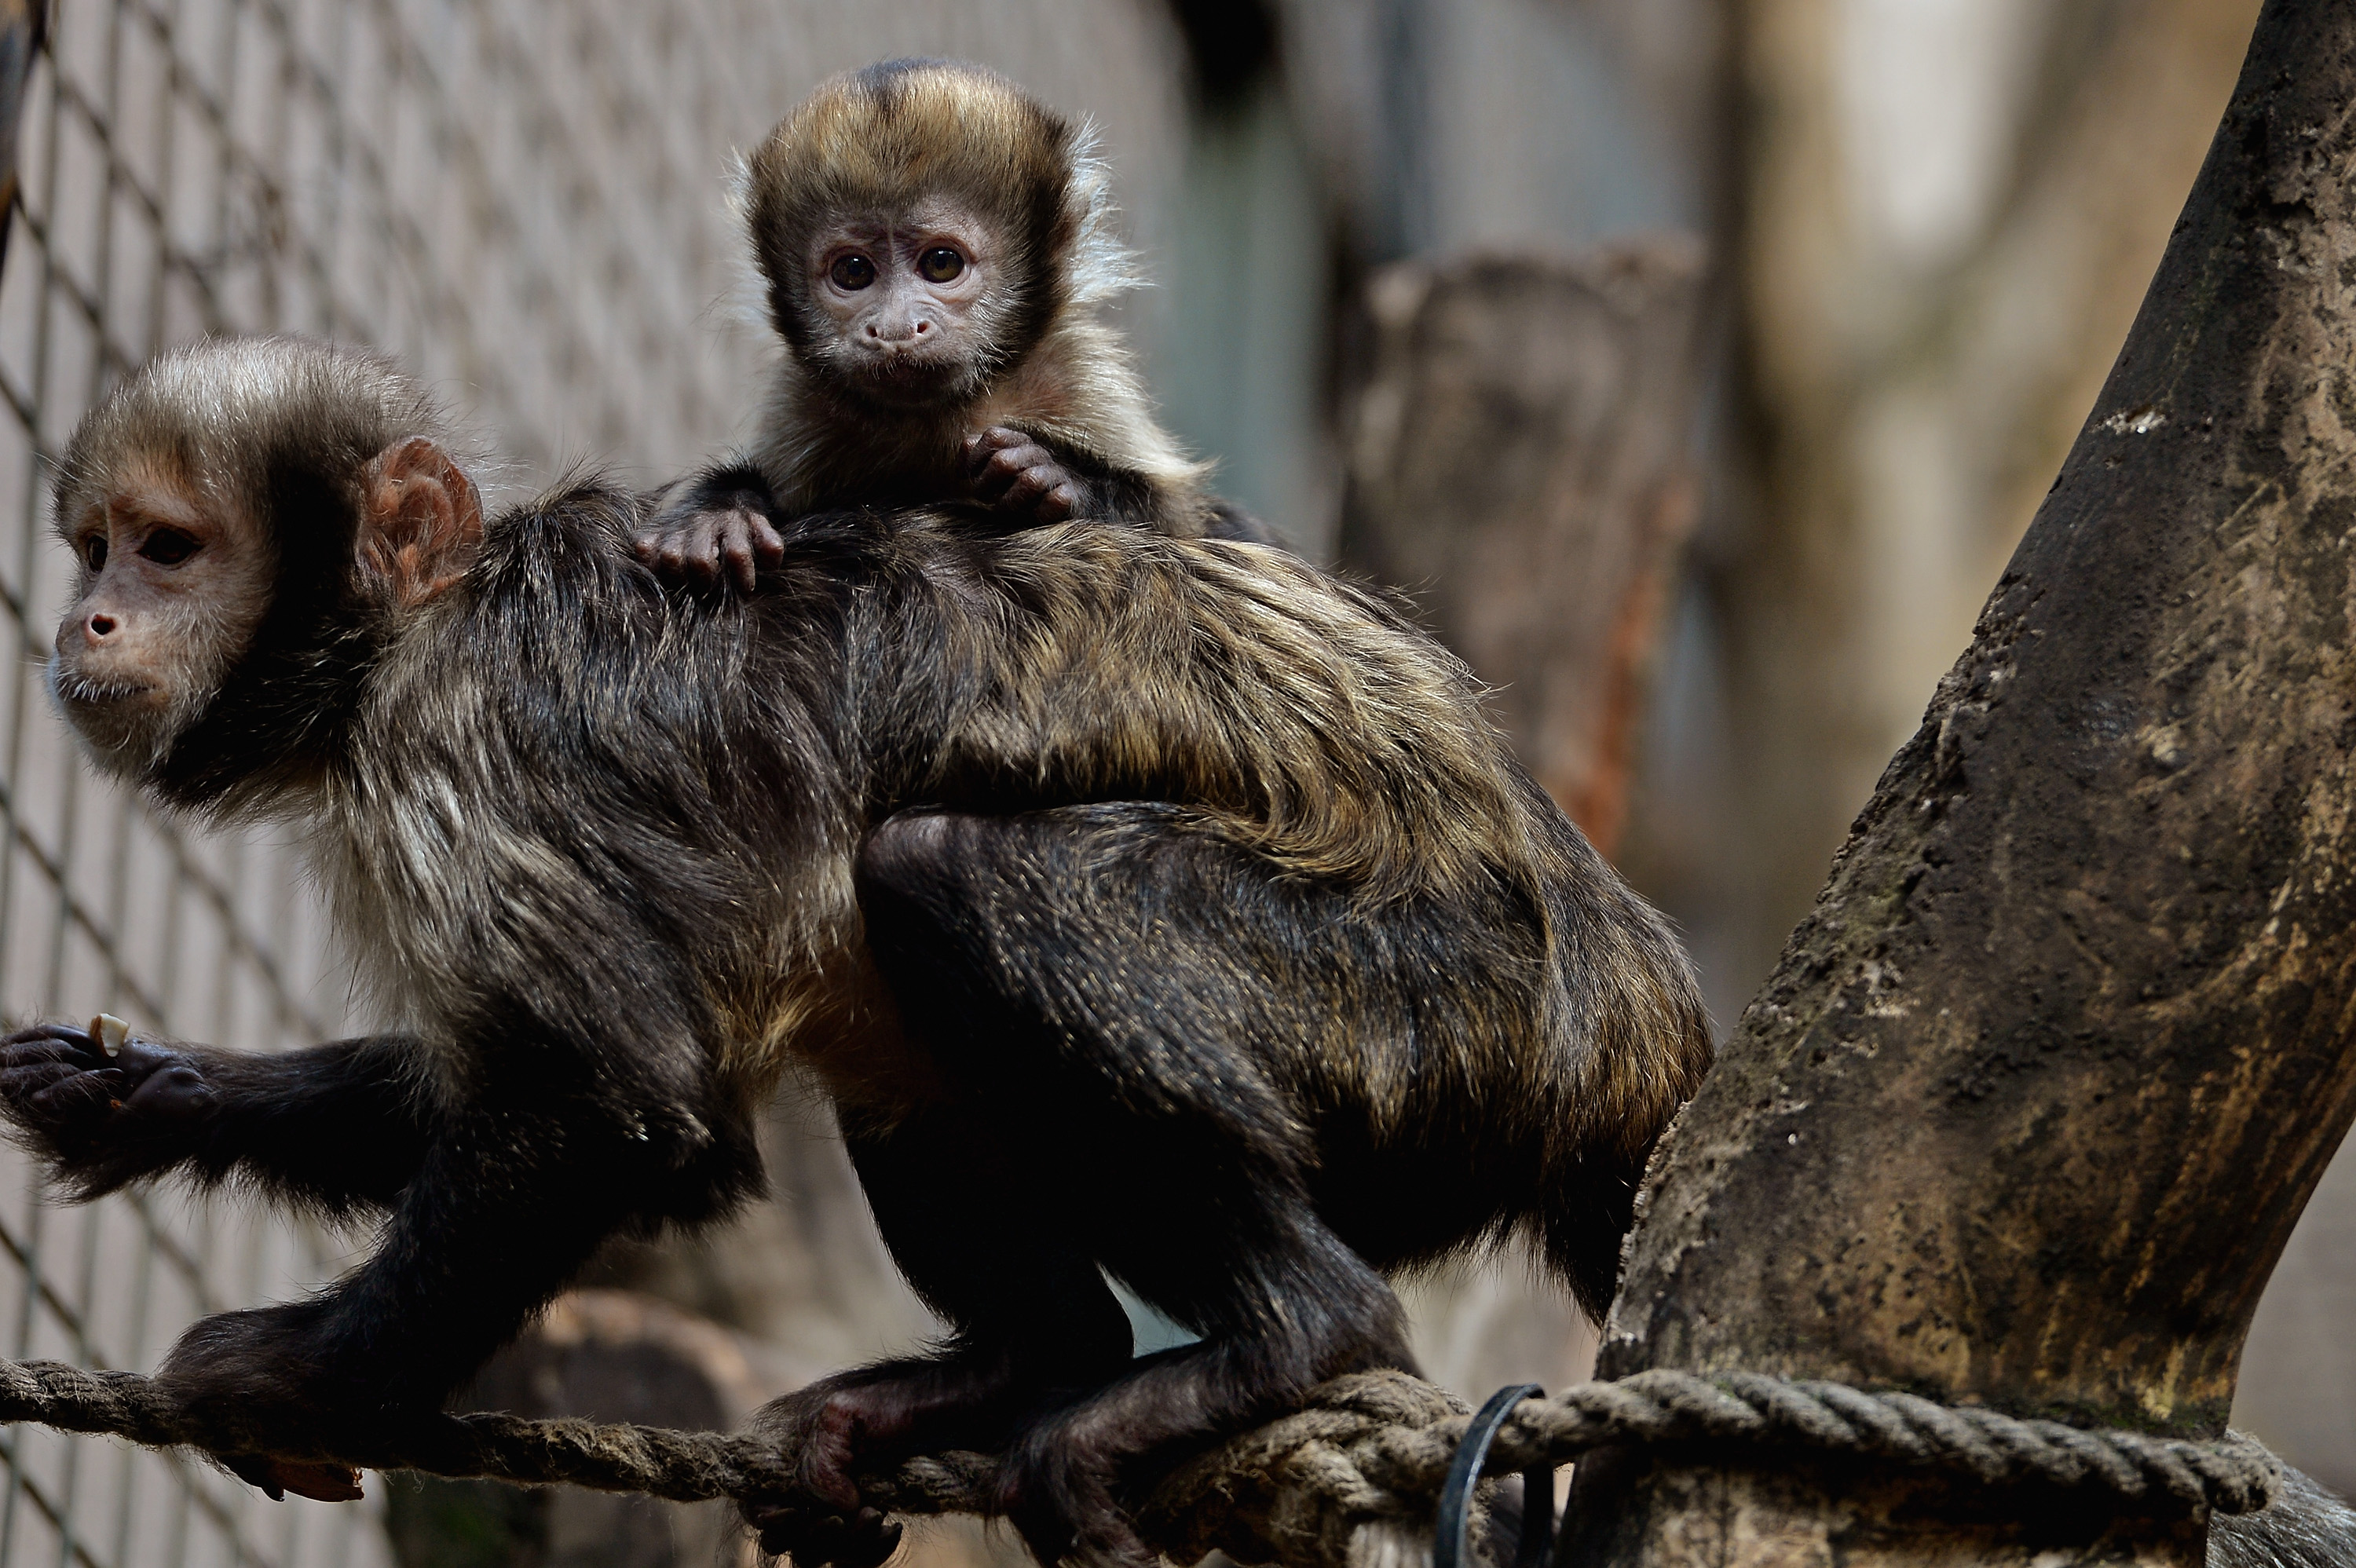 Capuchin monkeys.